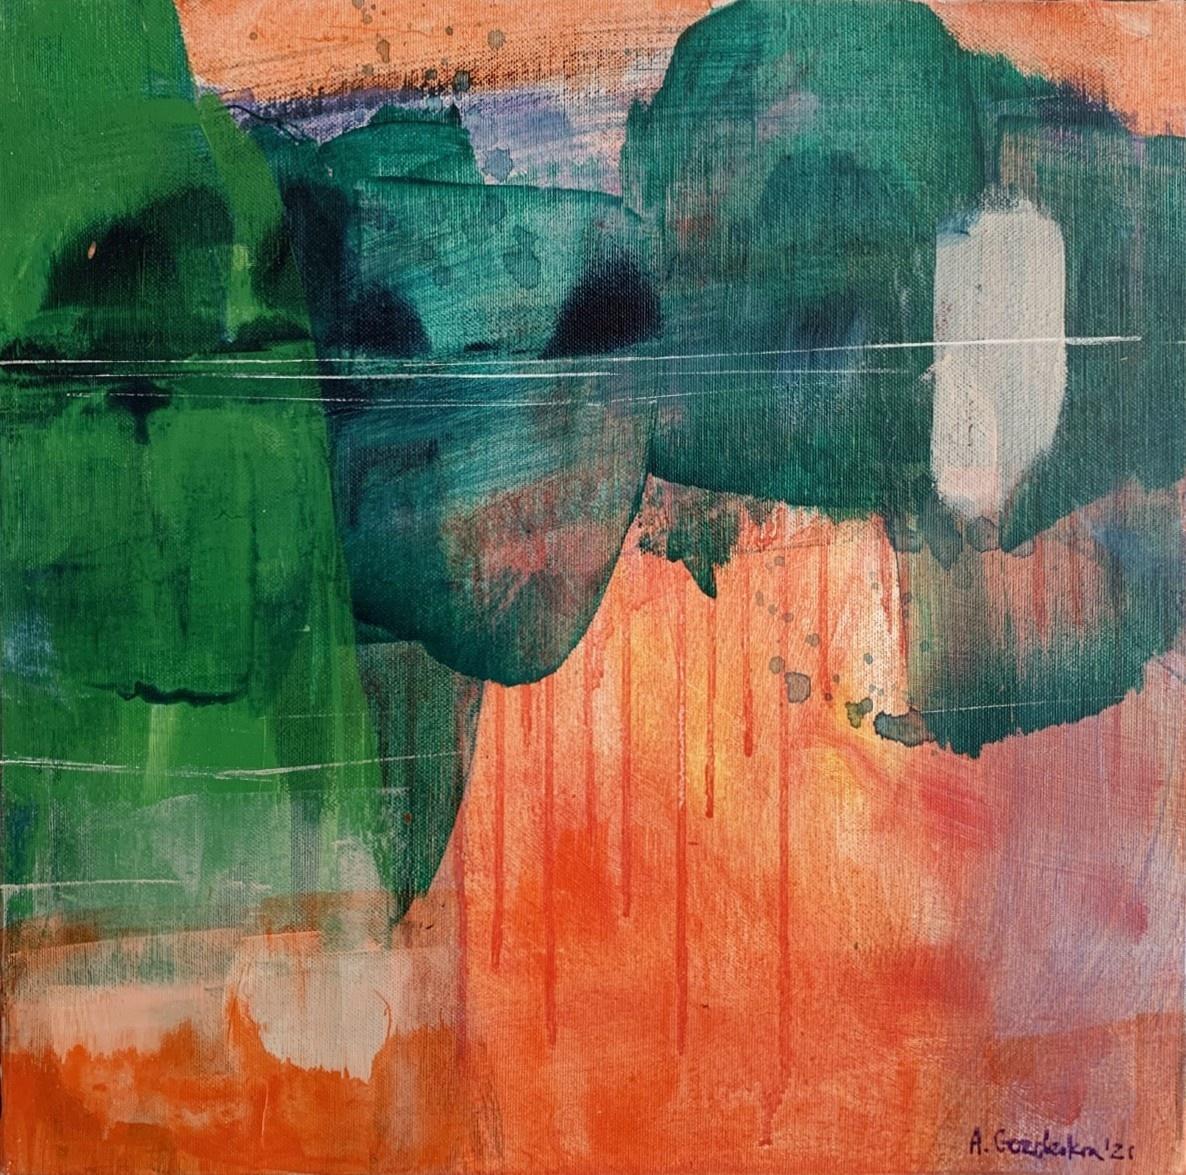 Anna Masiul-Gozdecka Abstract Painting – Grüner Wald - Zeitgenössische abstrakte Malerei Acrylfarben, polnischer Künstler